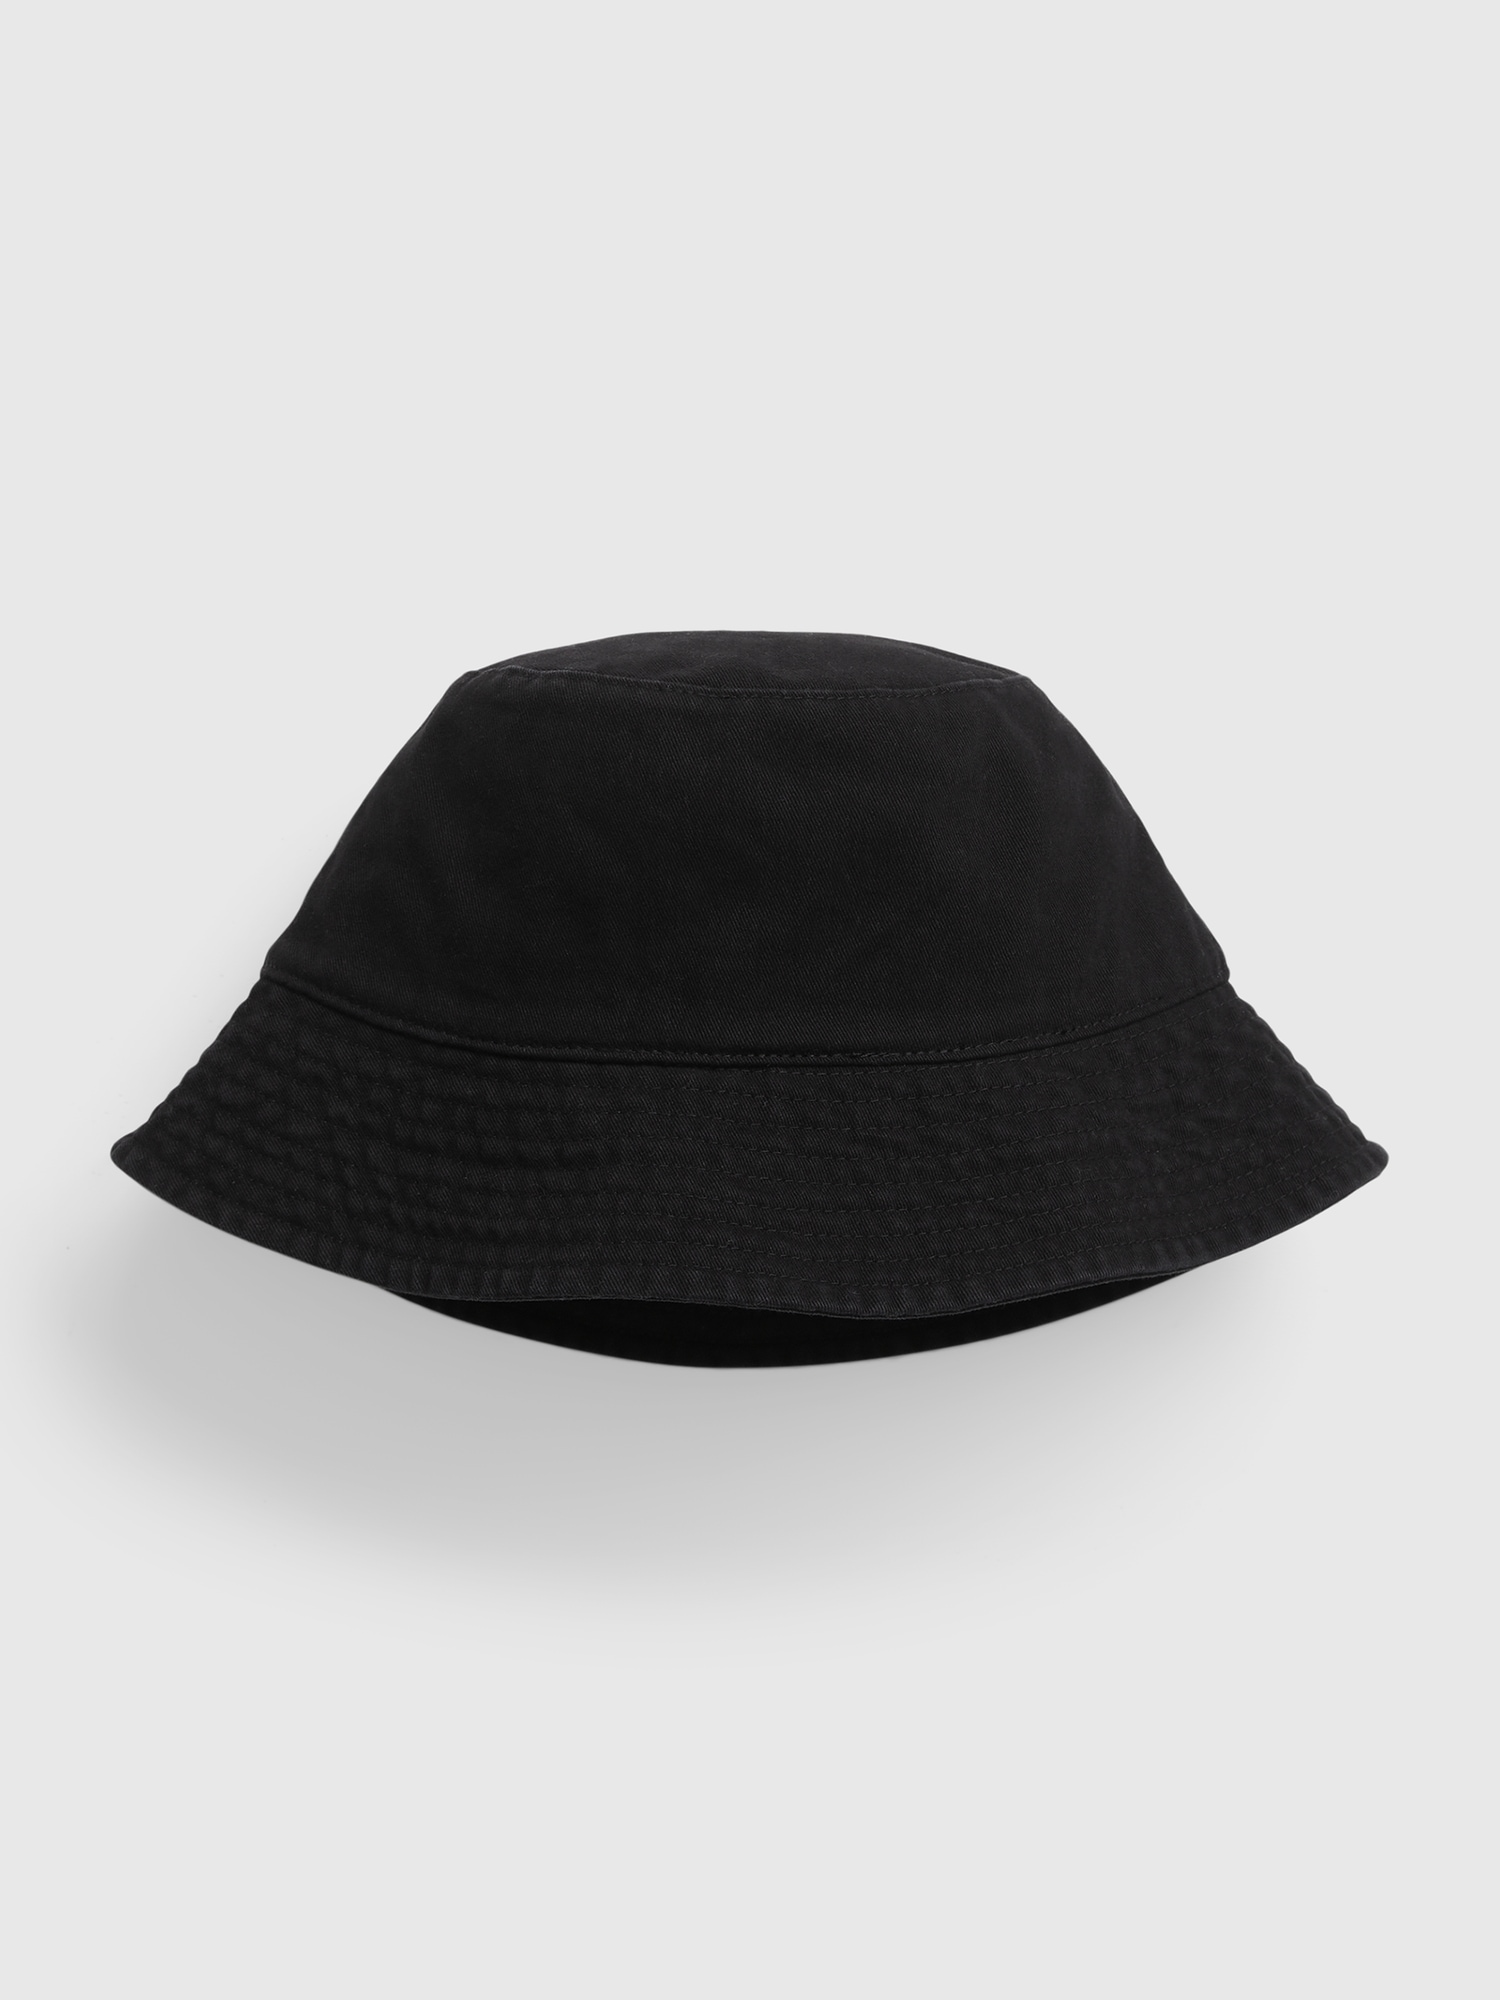 Cotton bucket hat